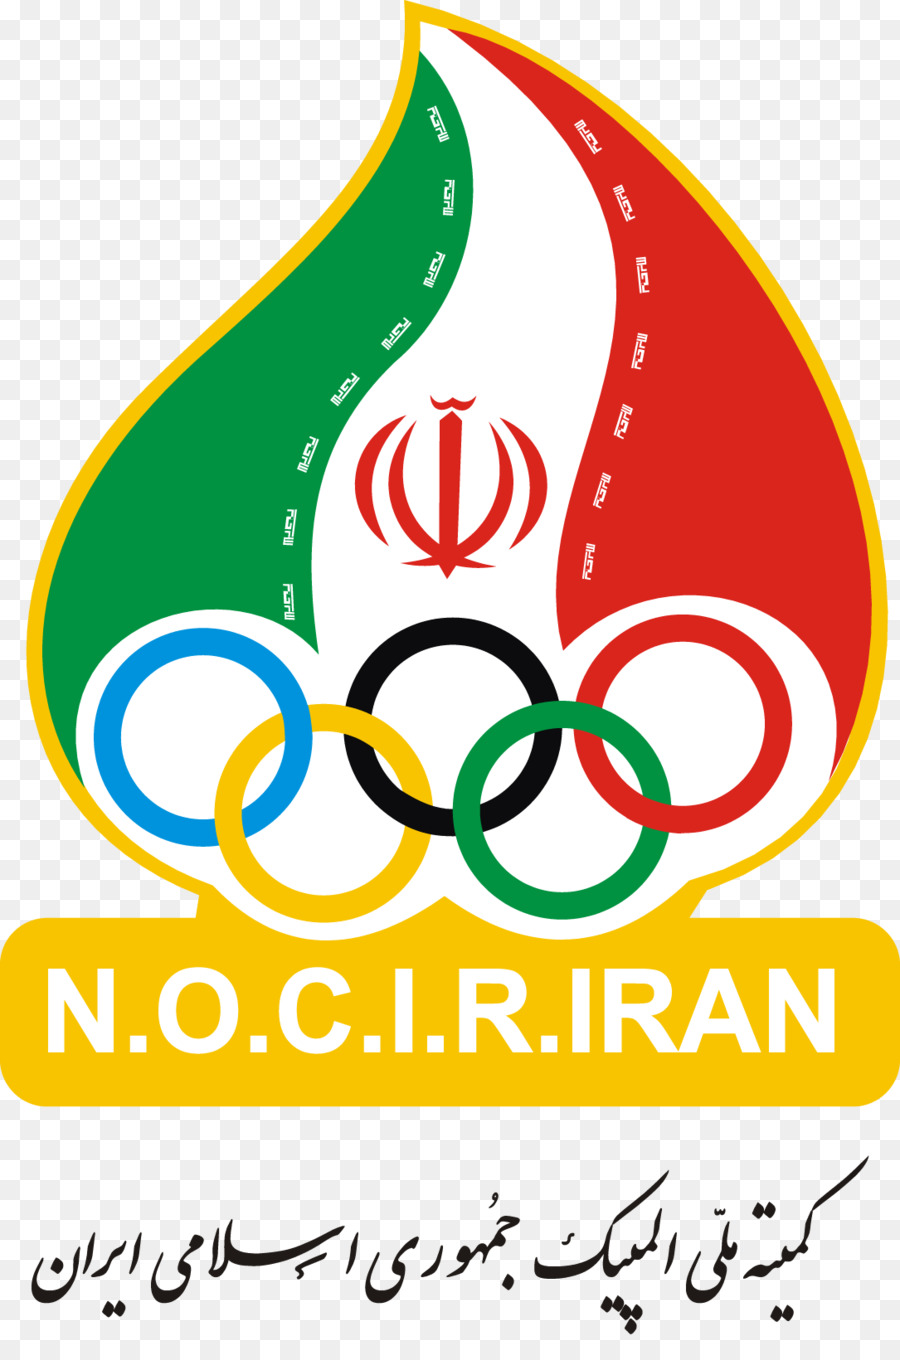 الألعاب الأولمبية，اللجنة الأولمبية الوطنية من جمهورية إيران الإسلامية PNG